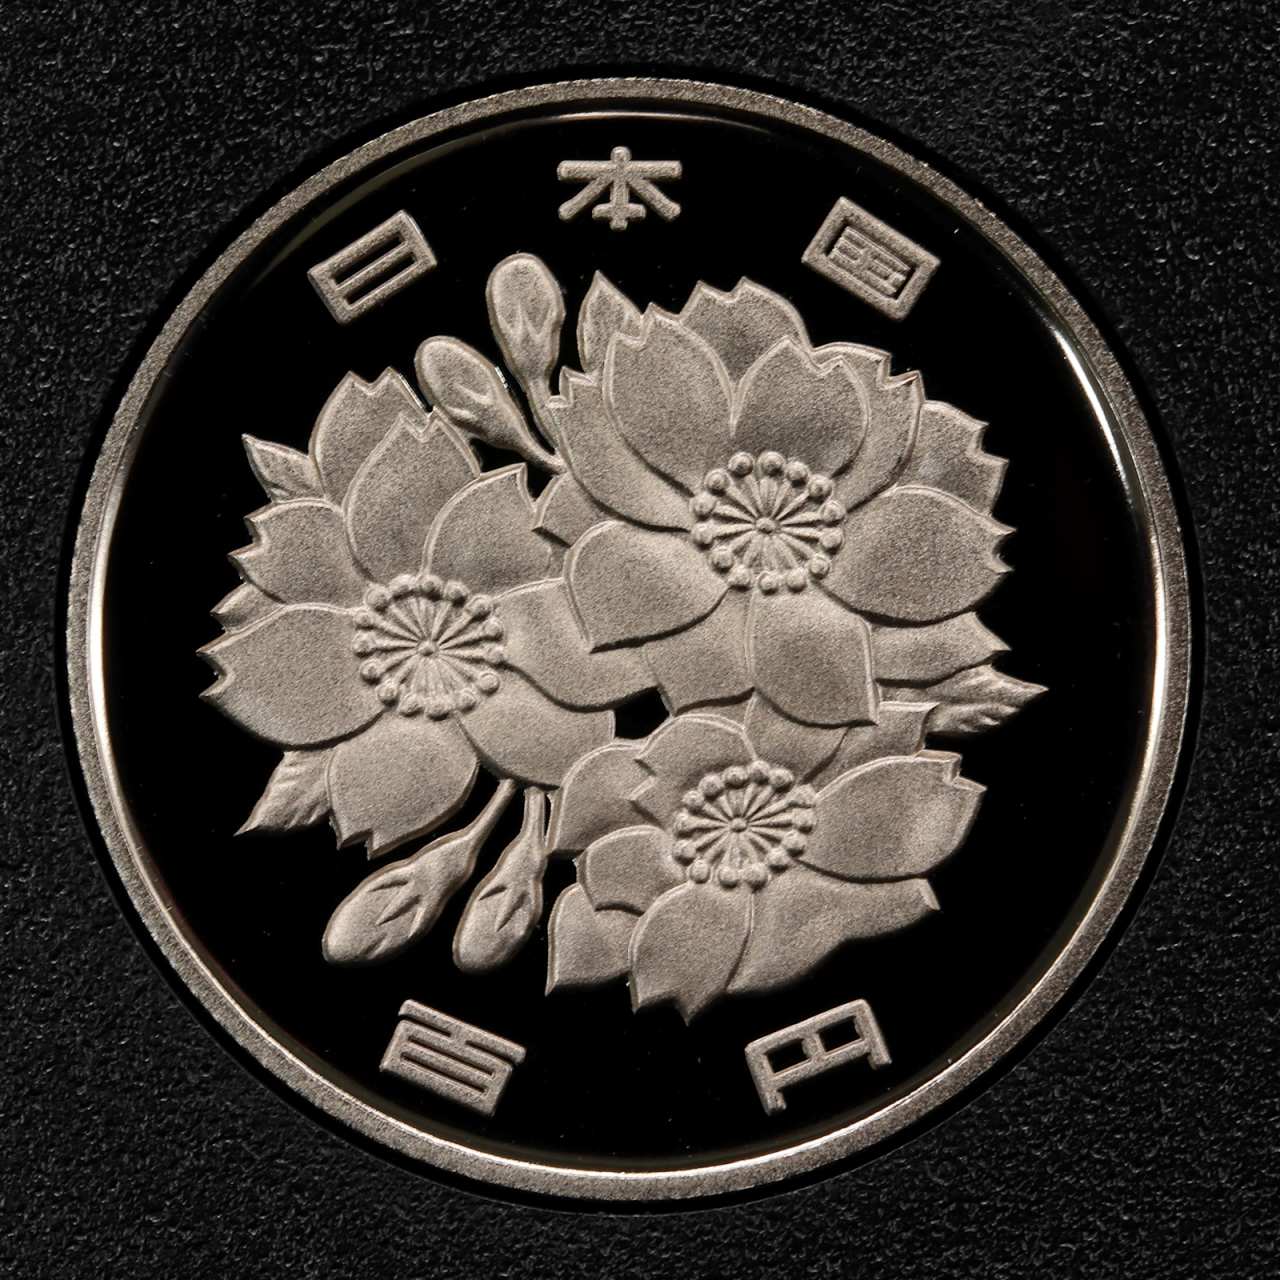 平成6年 (1994年) プルーフ 100円白銅貨 完全未使用 | ミスターコインズ